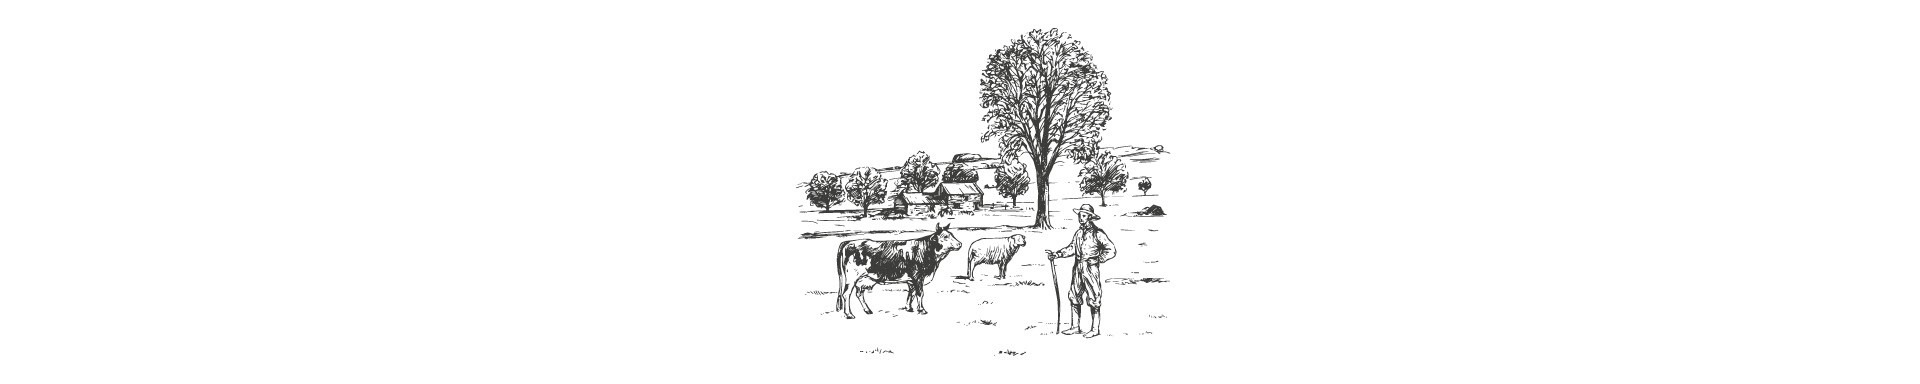 El largo caminar de los pastores